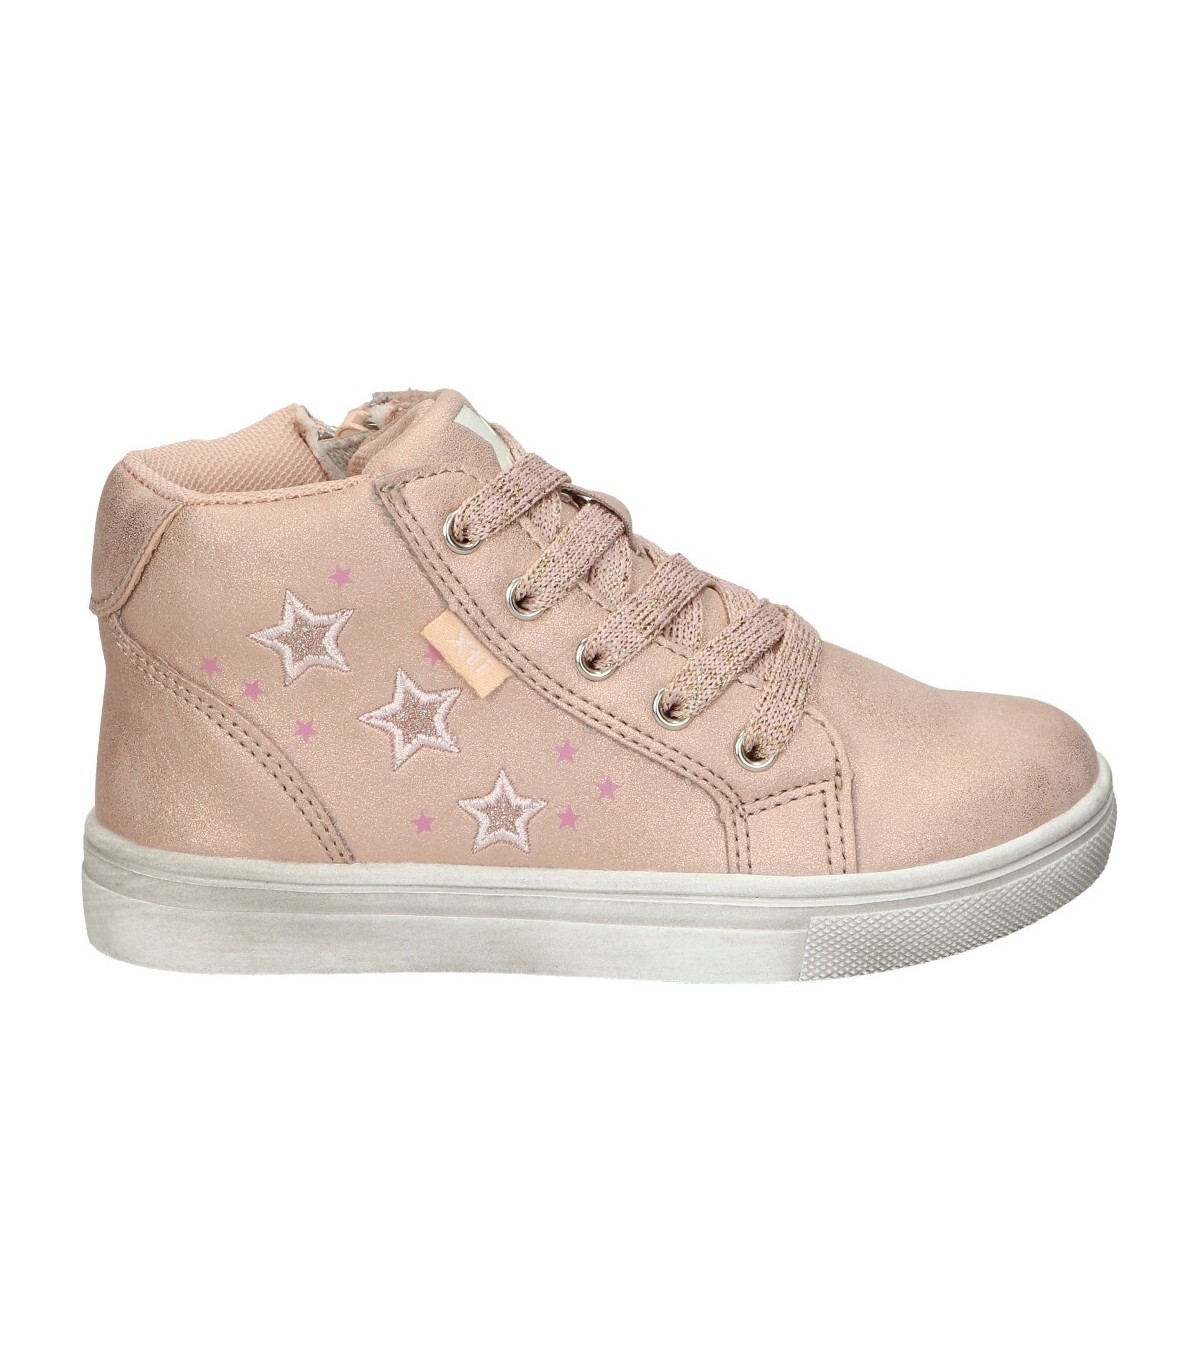 Zapatos rosas para niña 57288 online en MEGACALZADO